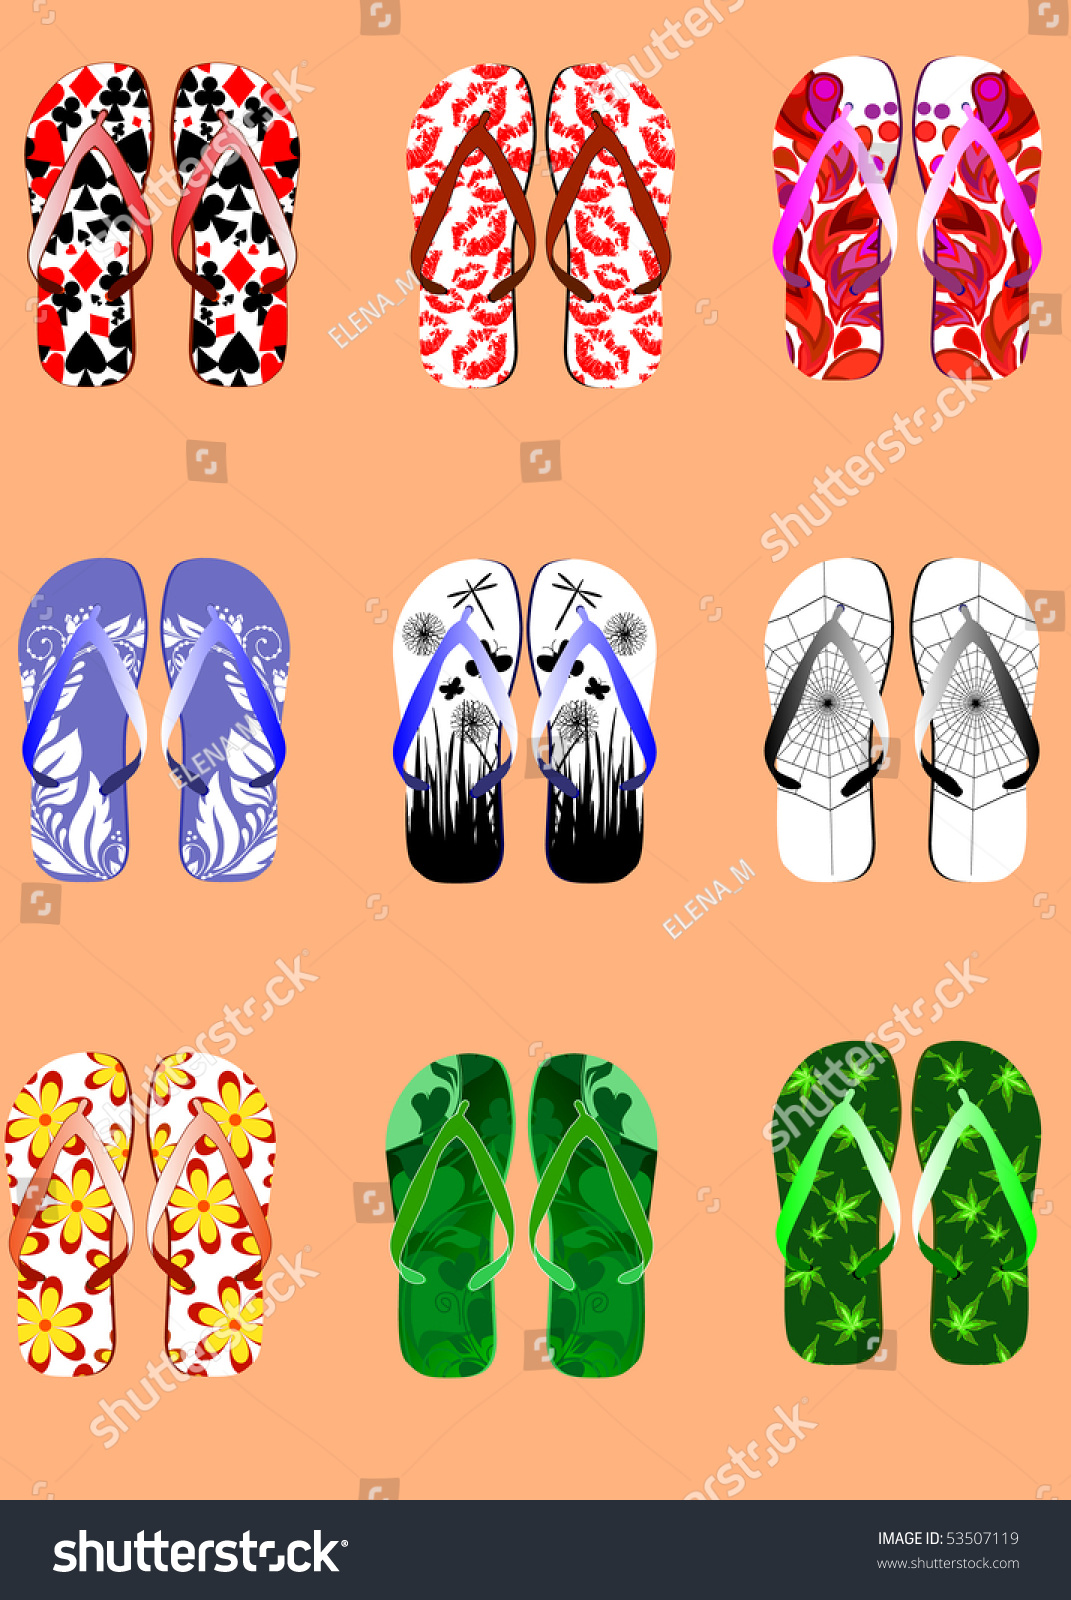 Set Of Summer Sandal Stock Vector Illustration 53507119 : Shutterstock